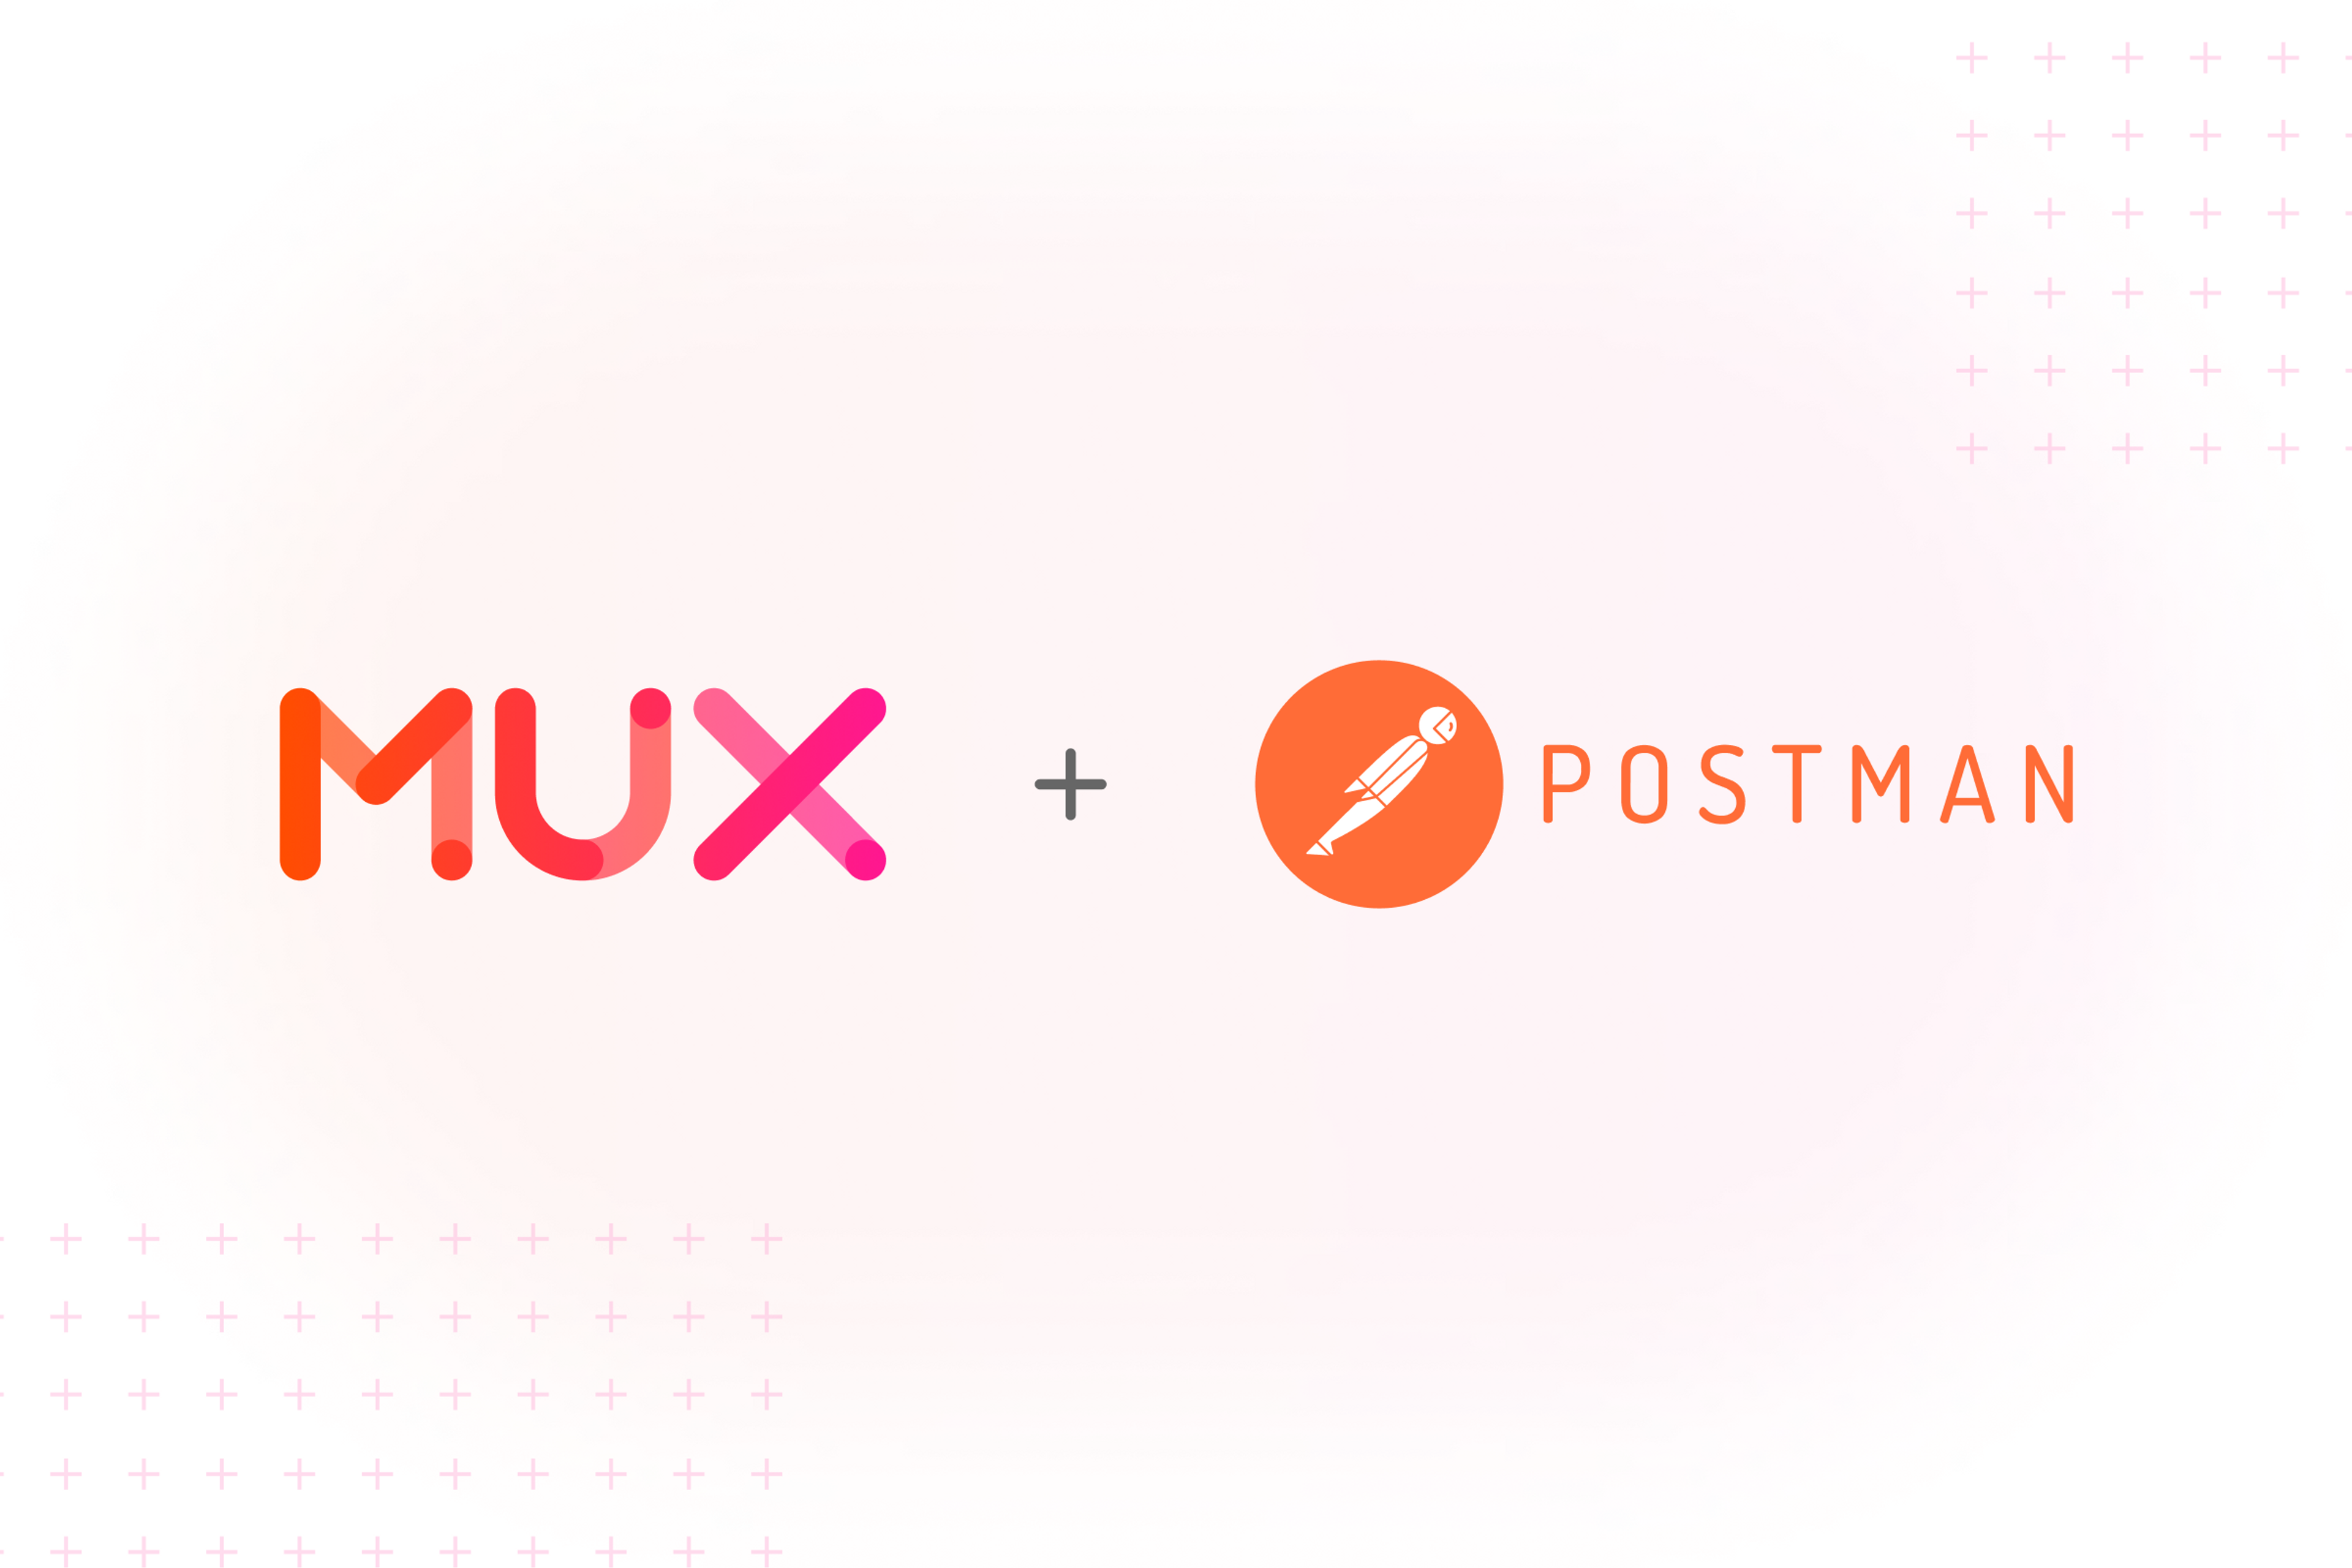 Mux logo plus sign Postman logo.